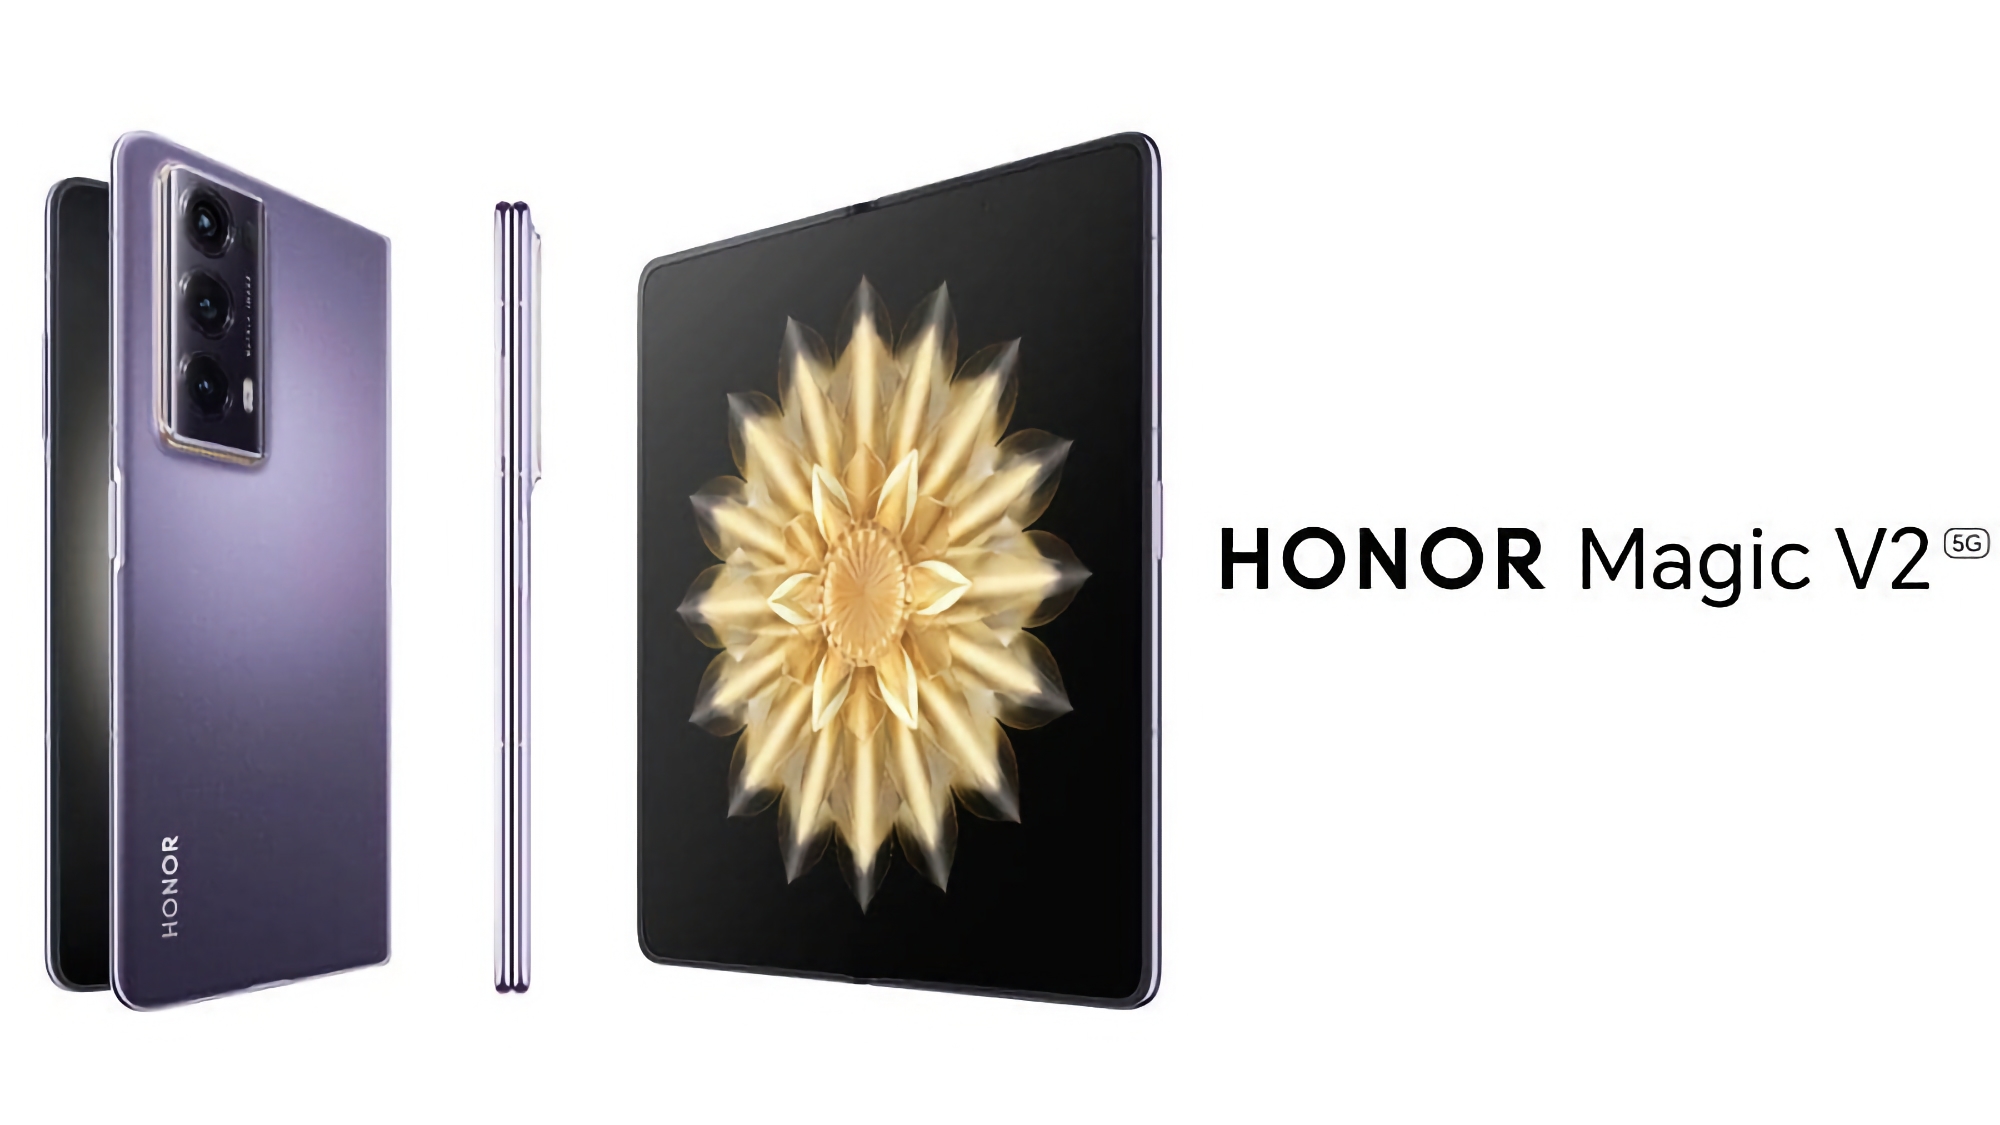 Den lättaste och tunnaste vikbara smarttelefonen på marknaden, Honor Magic V2, kommer att lanseras i Europa den 26 januari